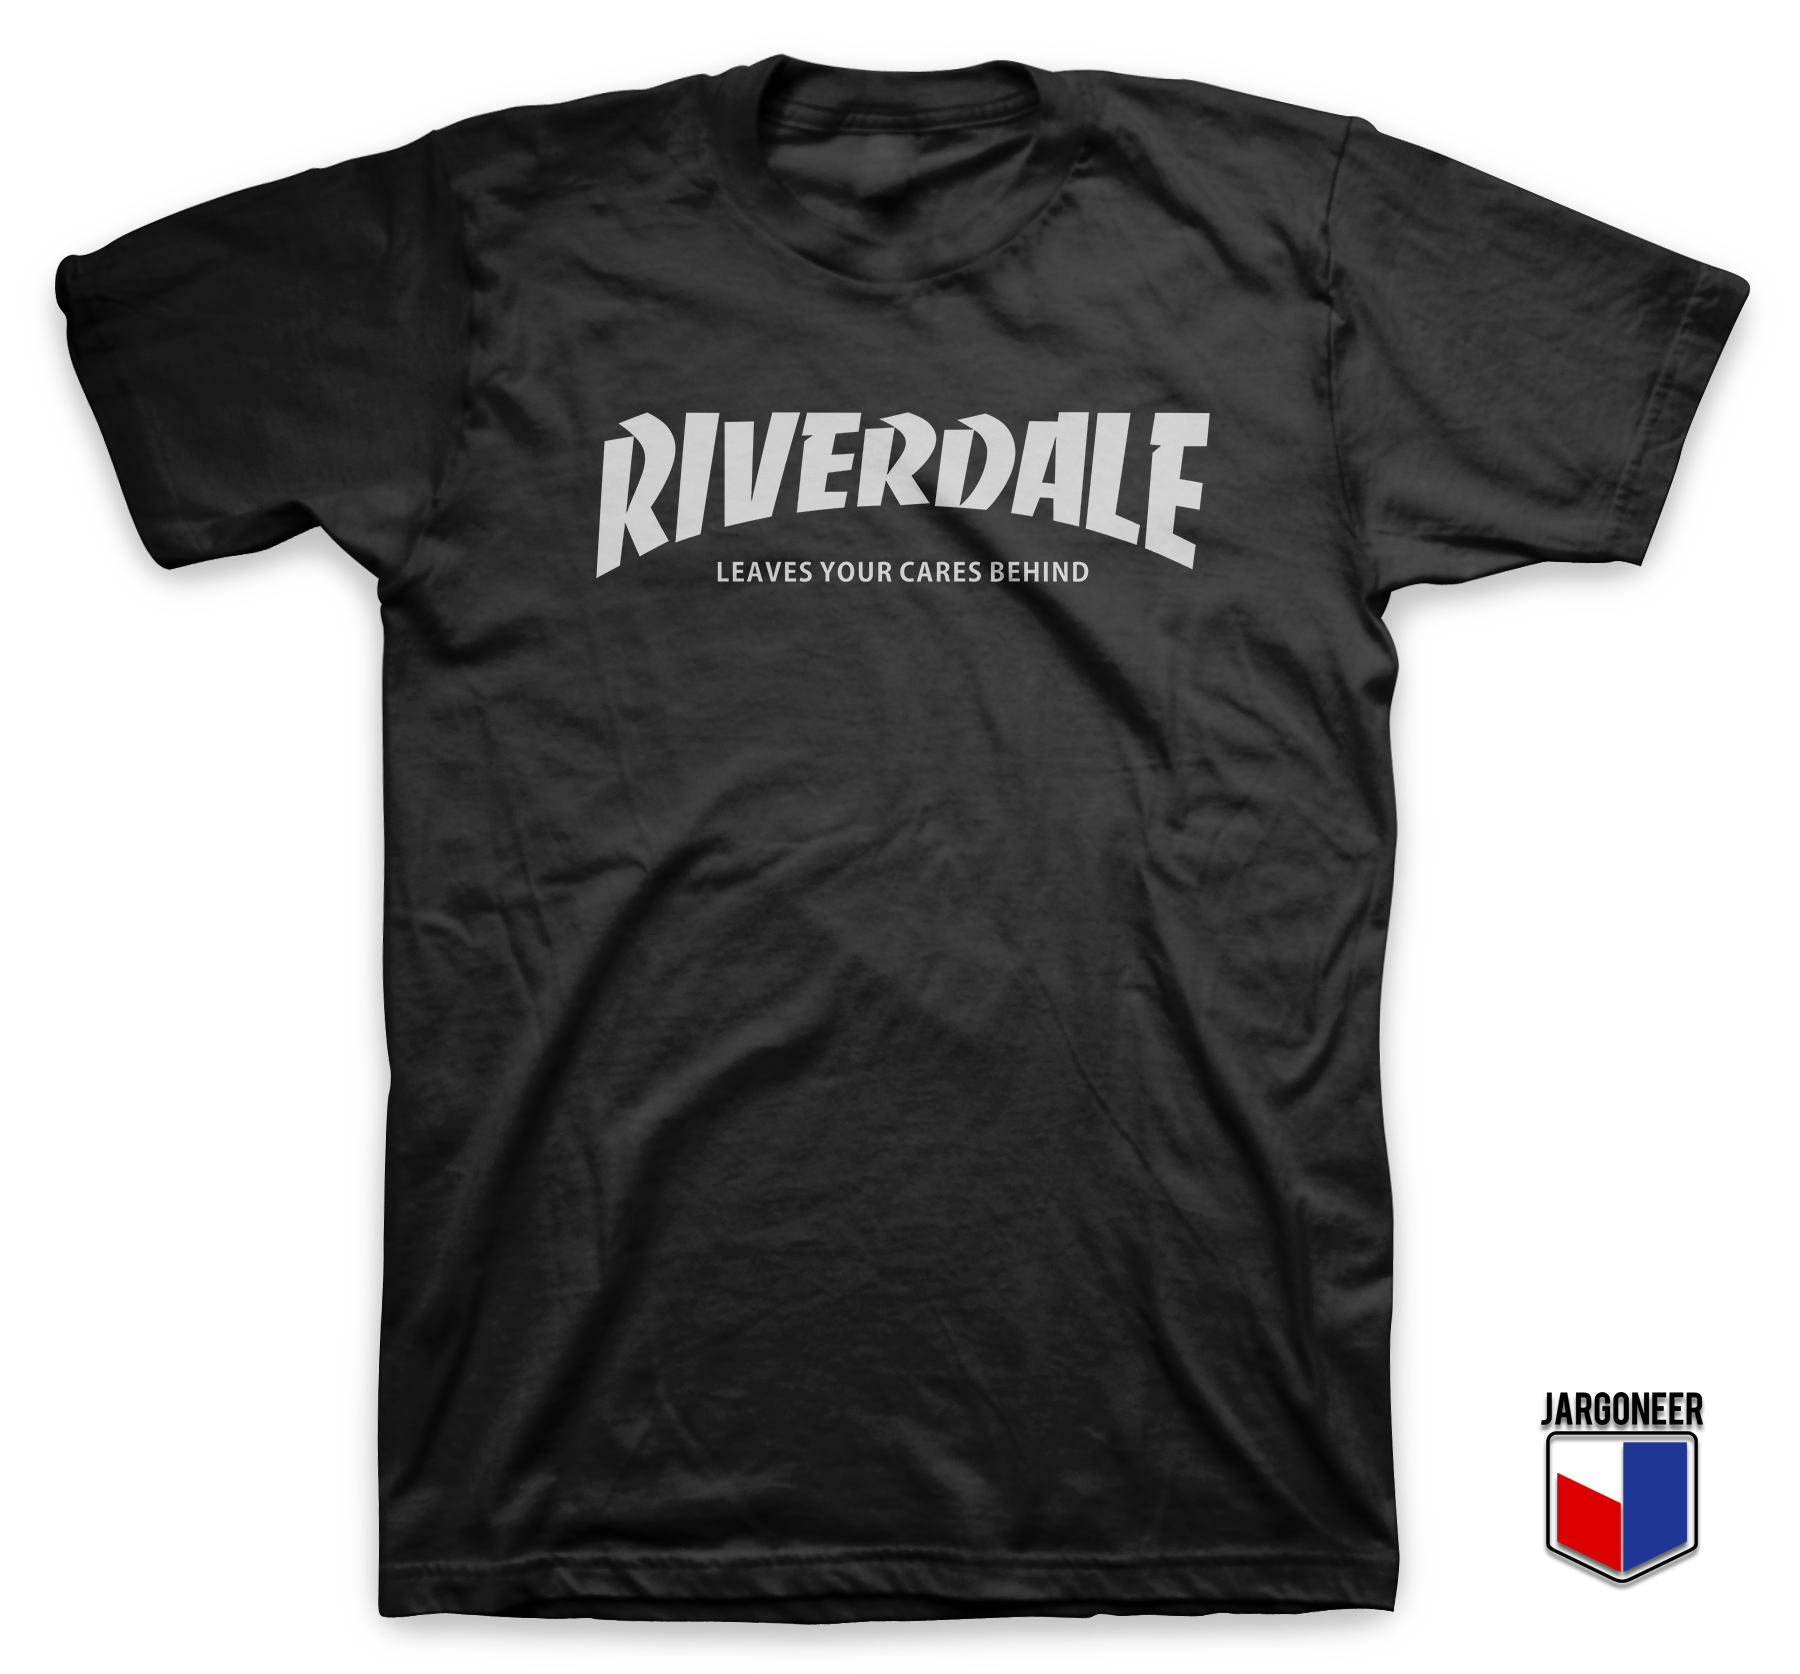 Riverdale Leaves Your Cares Behind Black T Shirt - Shop Unique Graphic Cool Shirt Designs